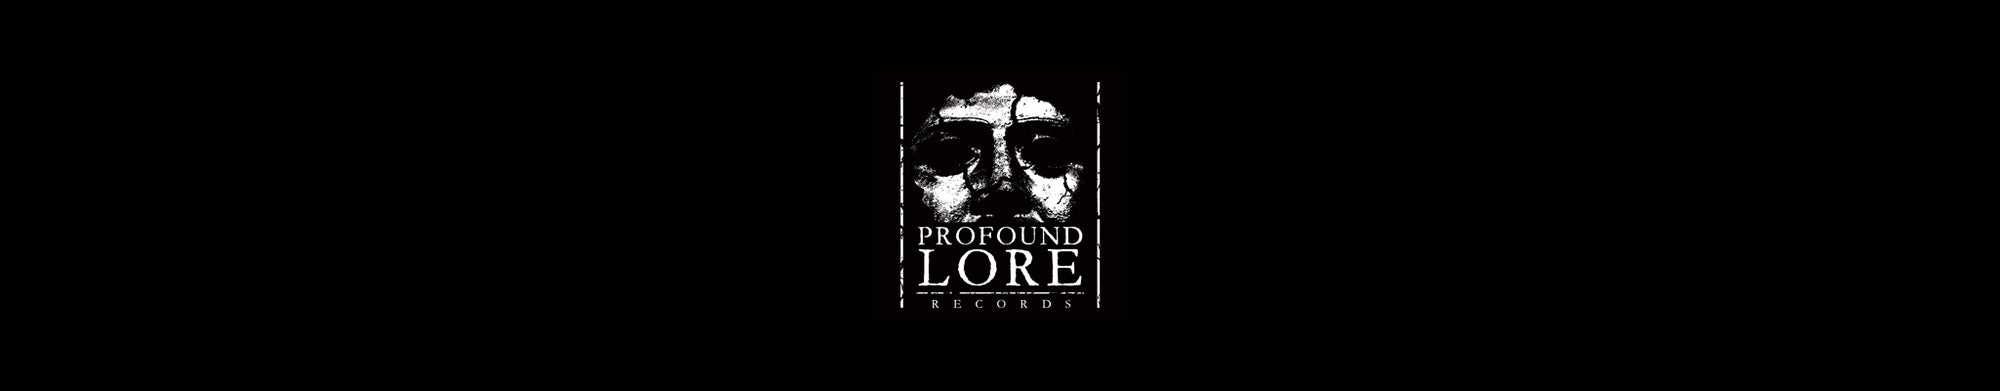 PROFOUND LORE RECORDS